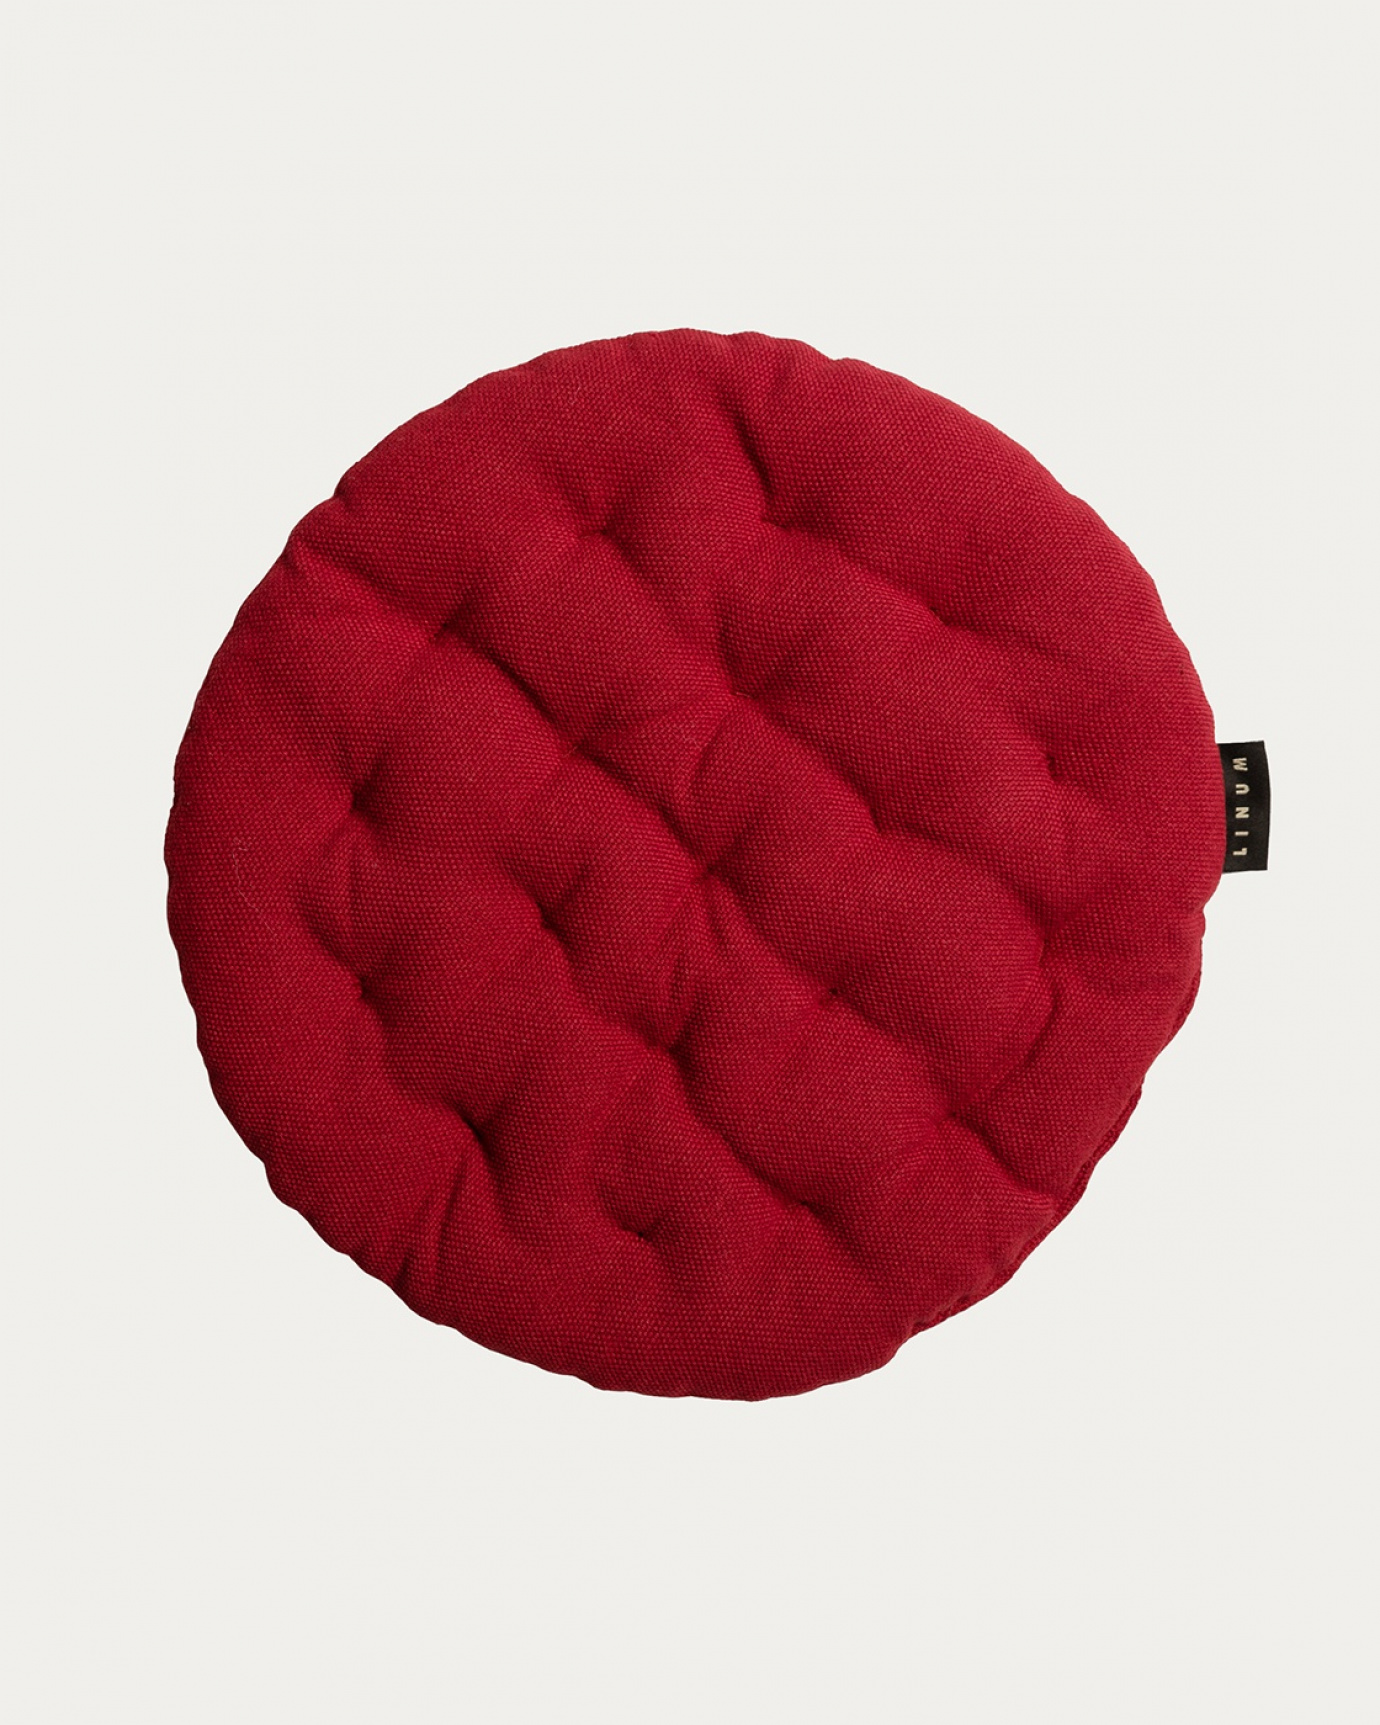 Immagine prodotto rosso PEPPER cuscini sedie di cotone con imbottitura in poliestere di LINUM DESIGN. Dimensioni ø37 cm.